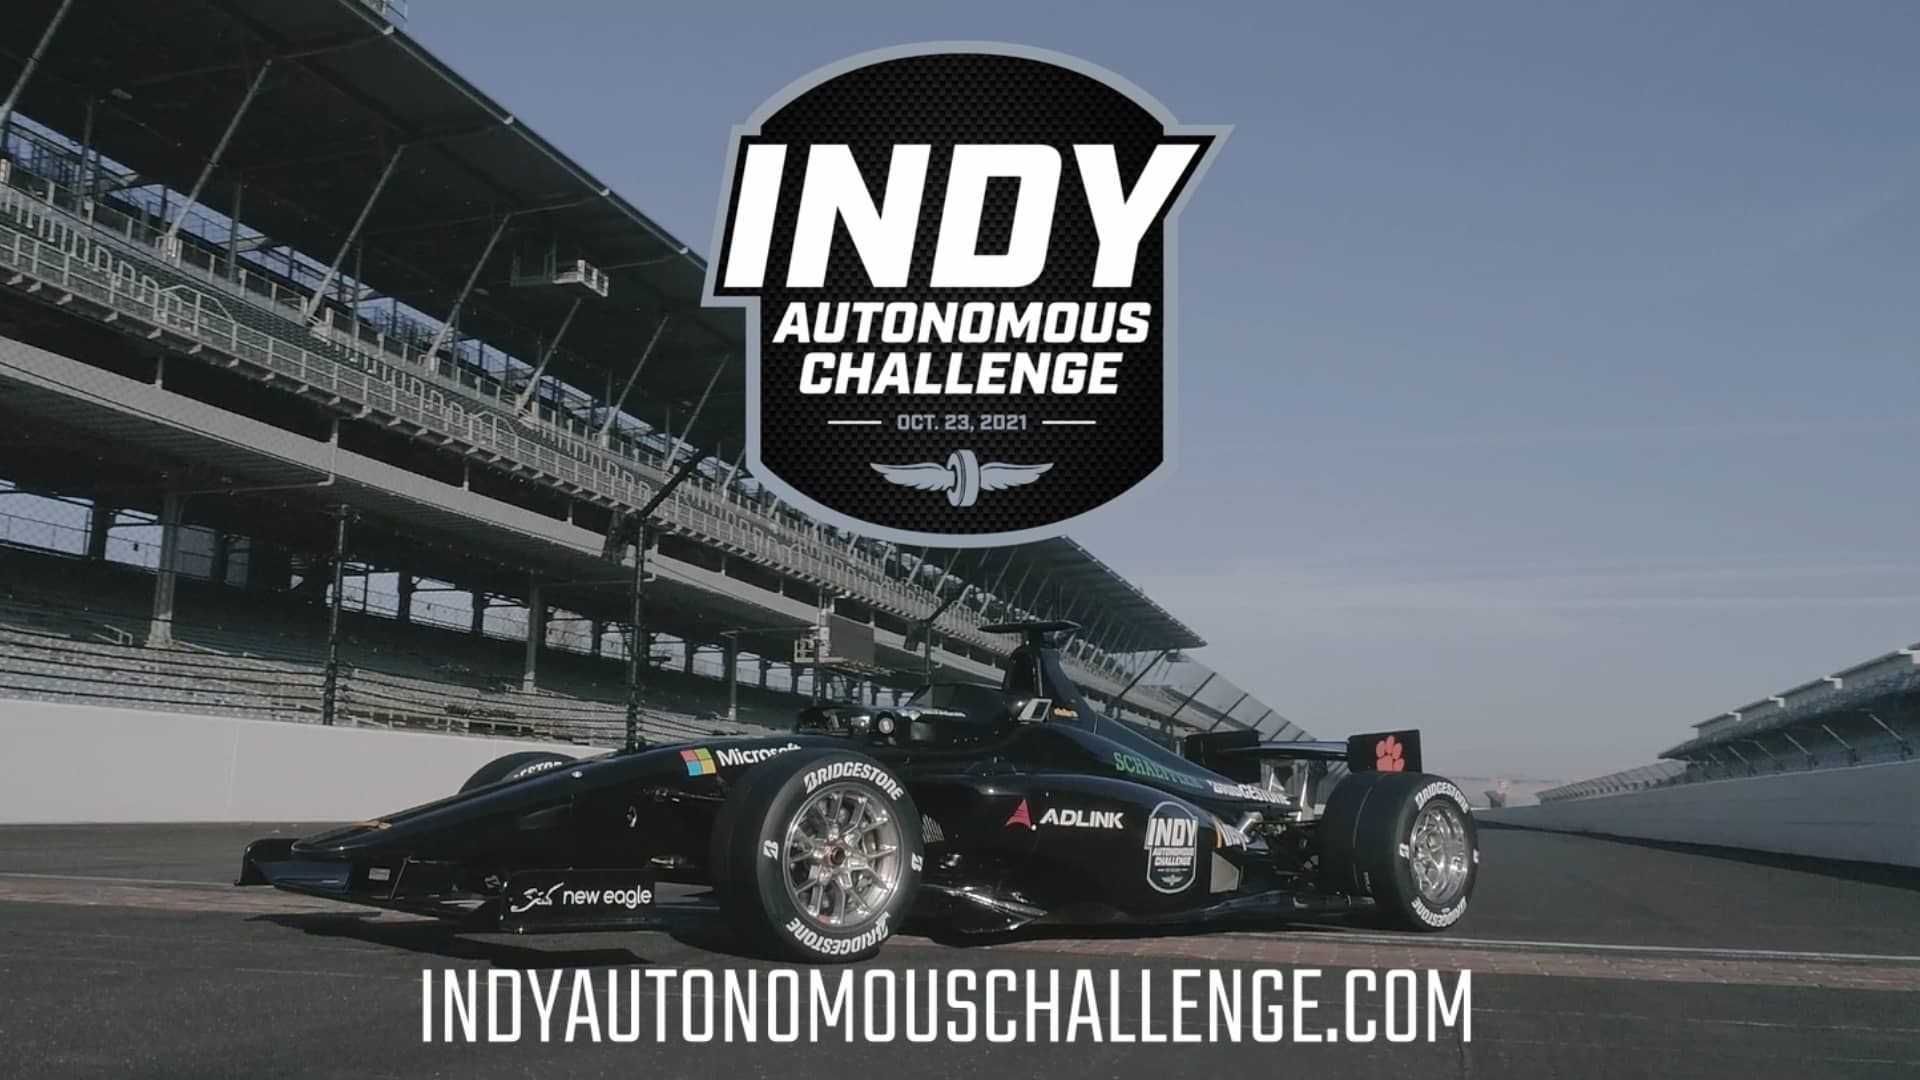 مرجع متخصصين ايران چالش خودرو خودران ايندي كار / IndyCar Autonomous Series در پيست ايندياناپوليس 